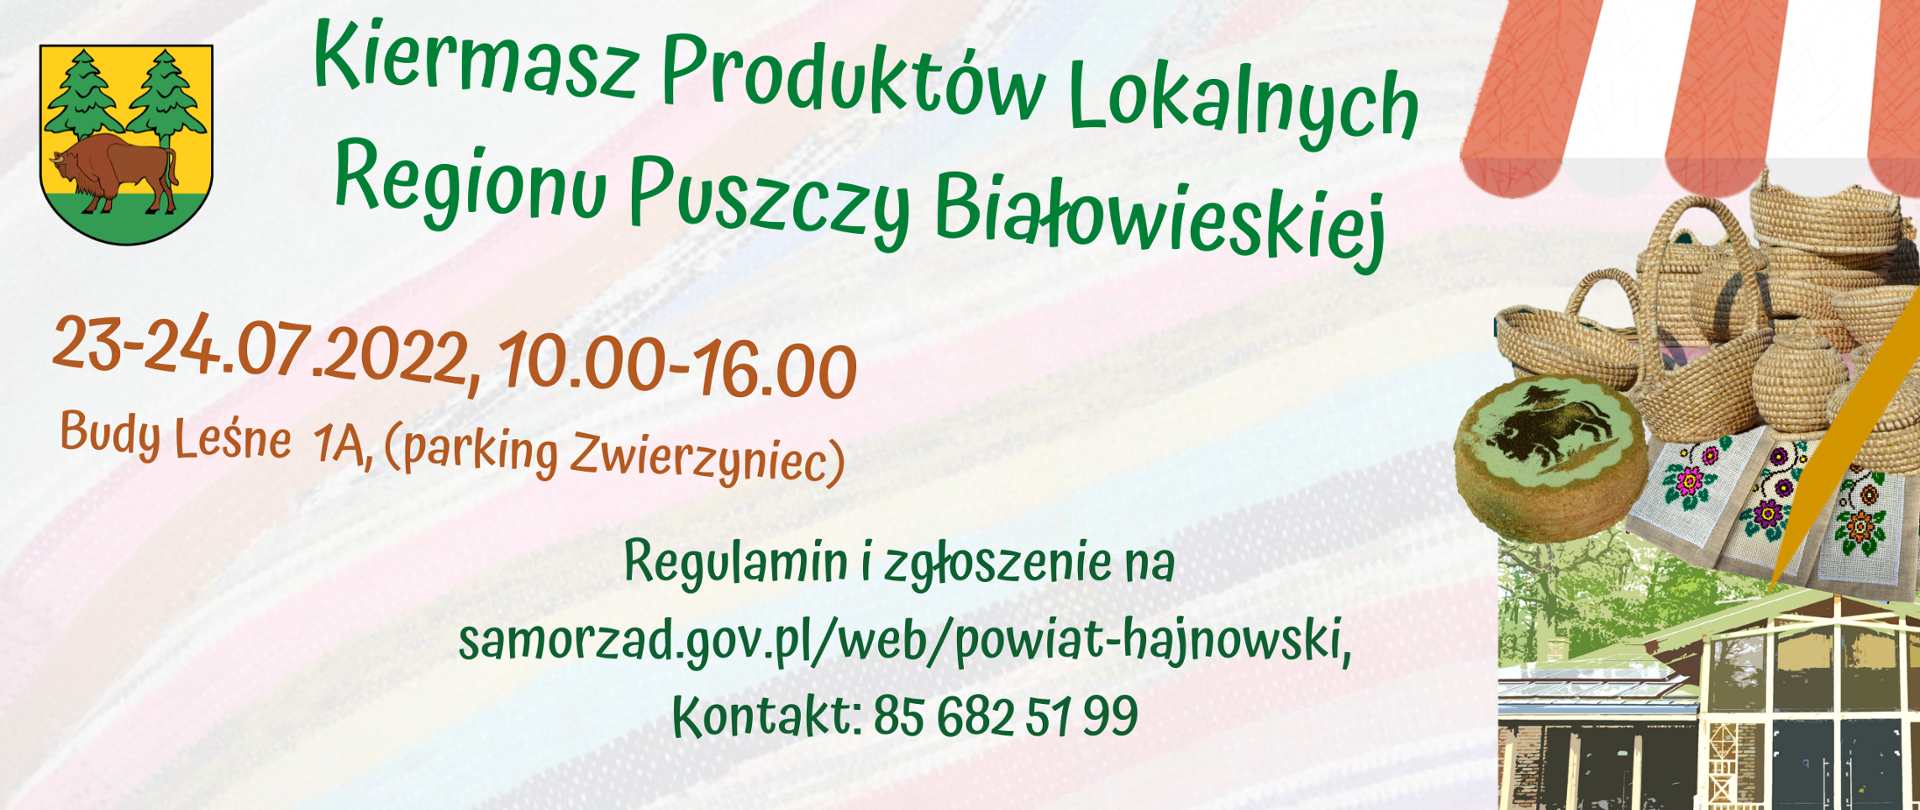 Kiermasz Produktów Lokalnych Regionu Puszczy Białowieskiej, 23-24.07.2022 Budy Leśne 1A 